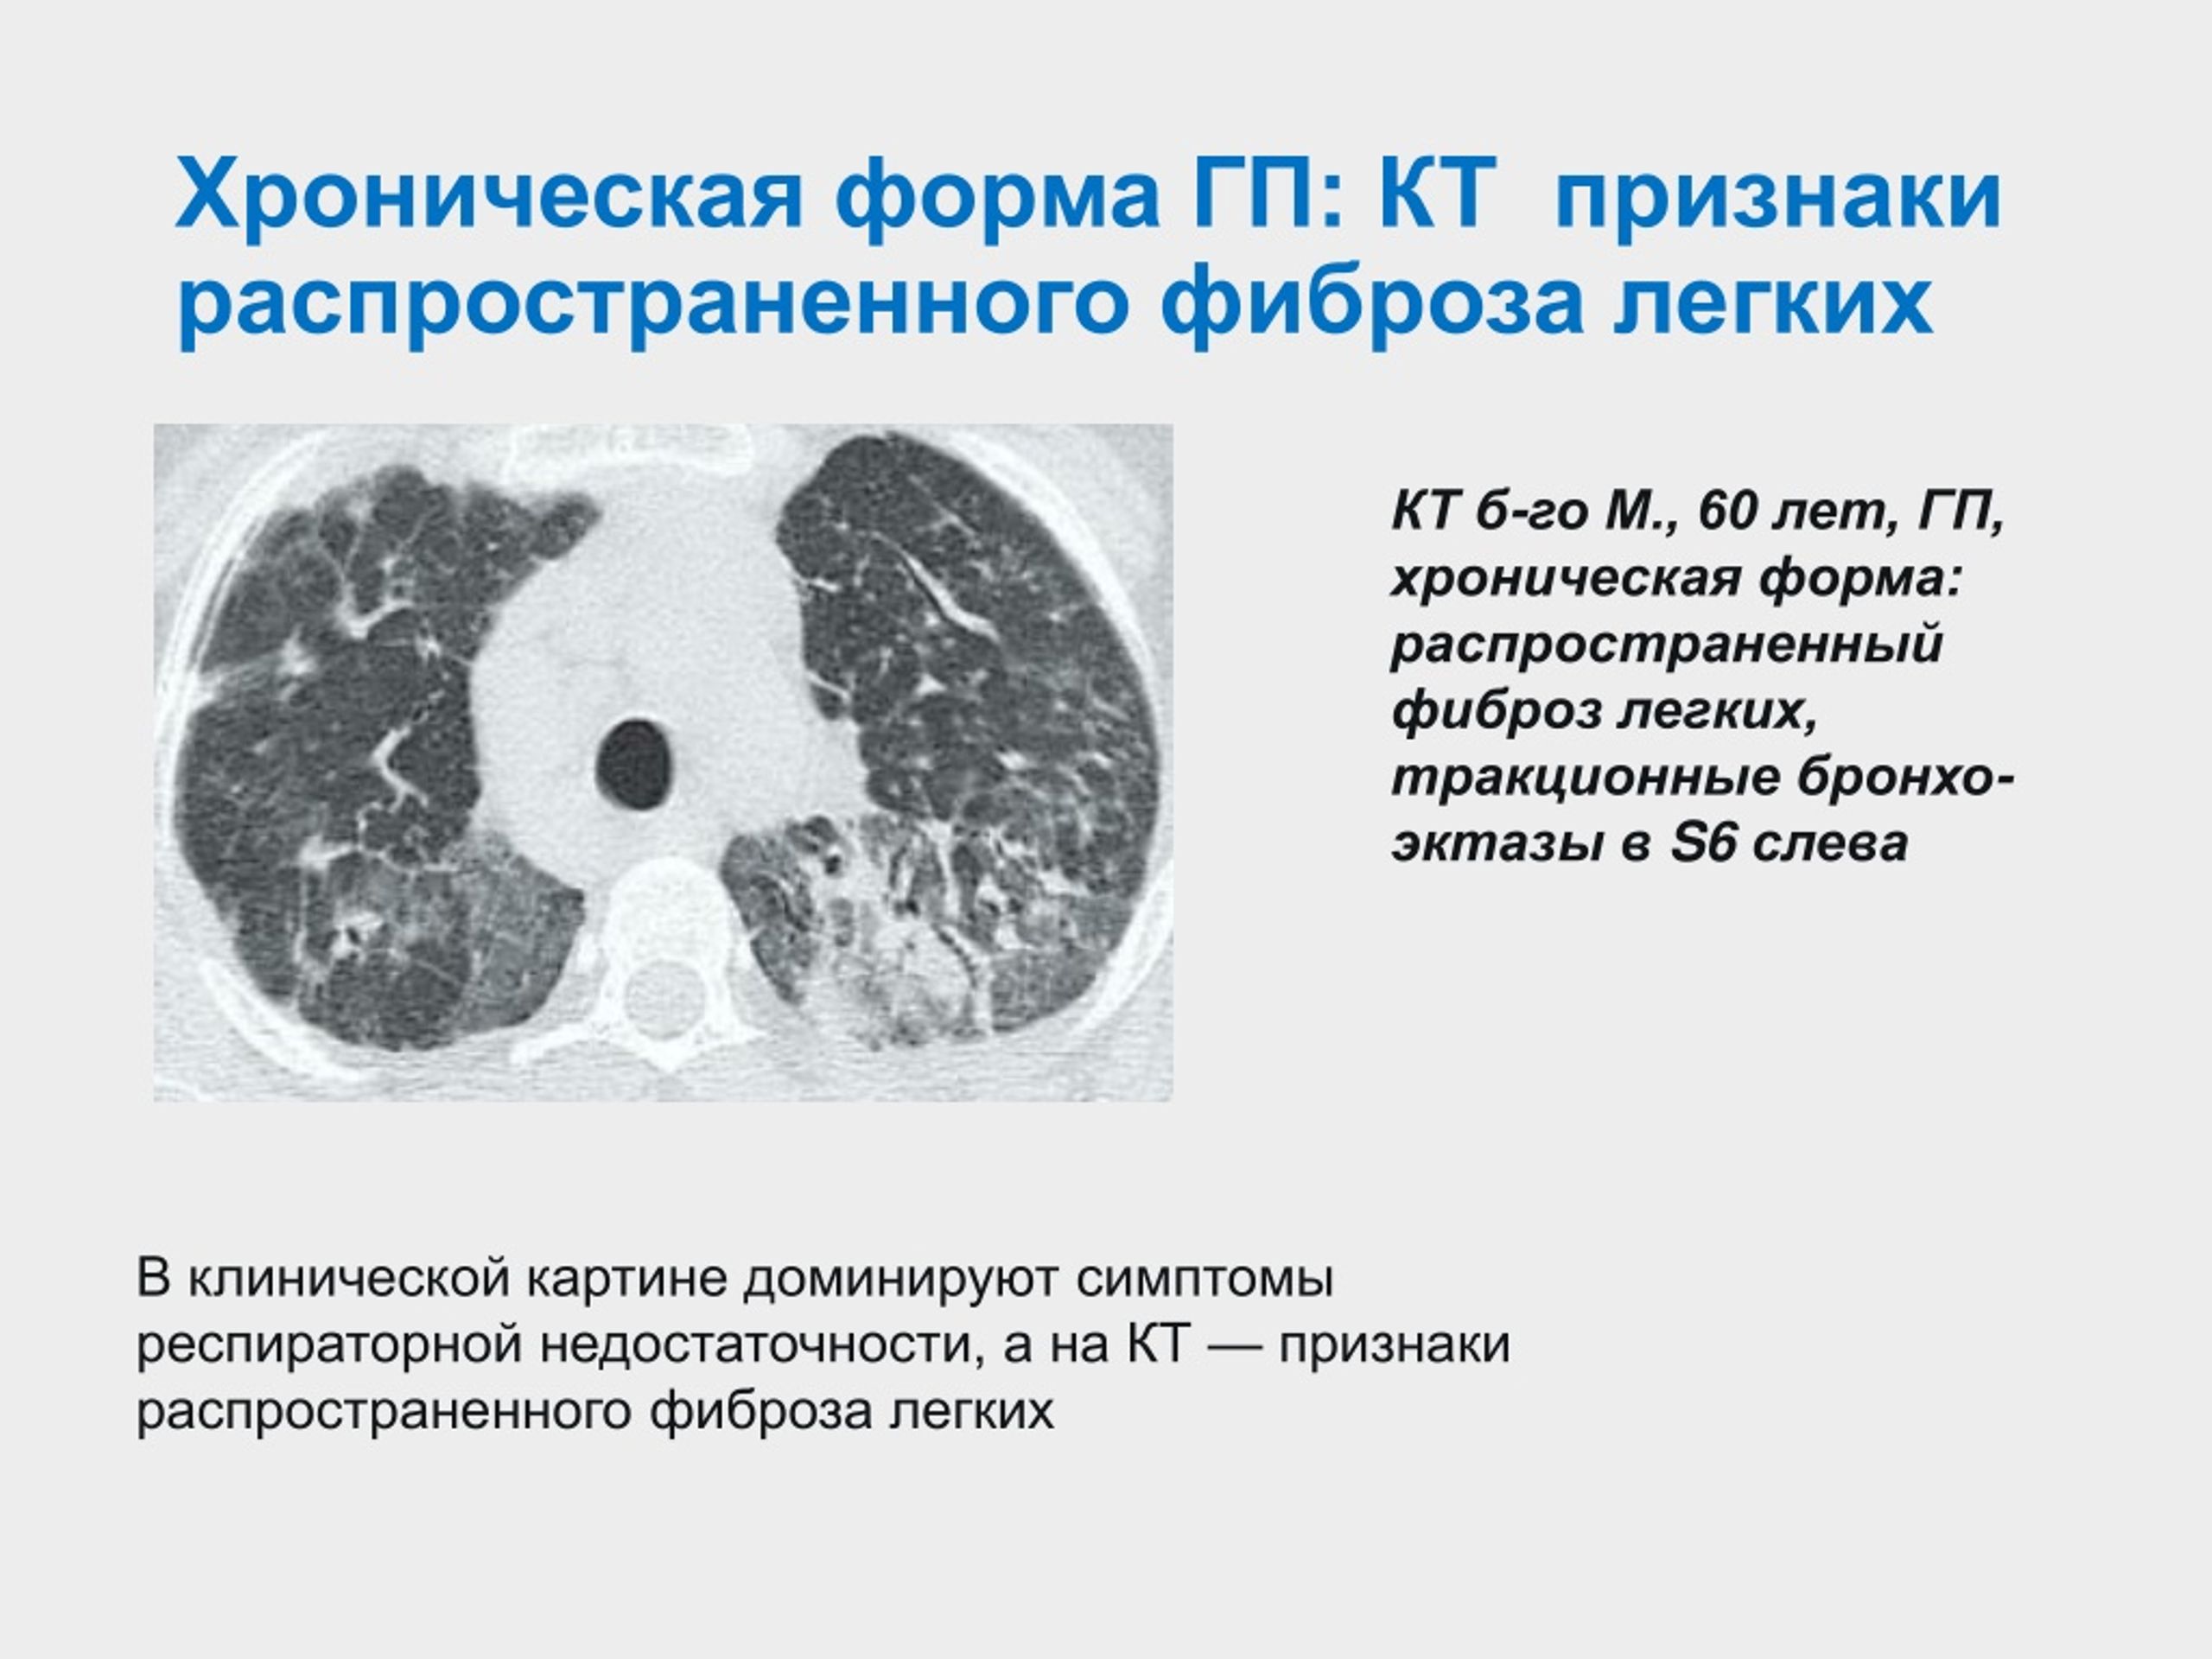 Фиброз ковид. Интерстициальные заболевания легких кт. Фиброз лёгких на кт. Пневмофиброз на кт легких.